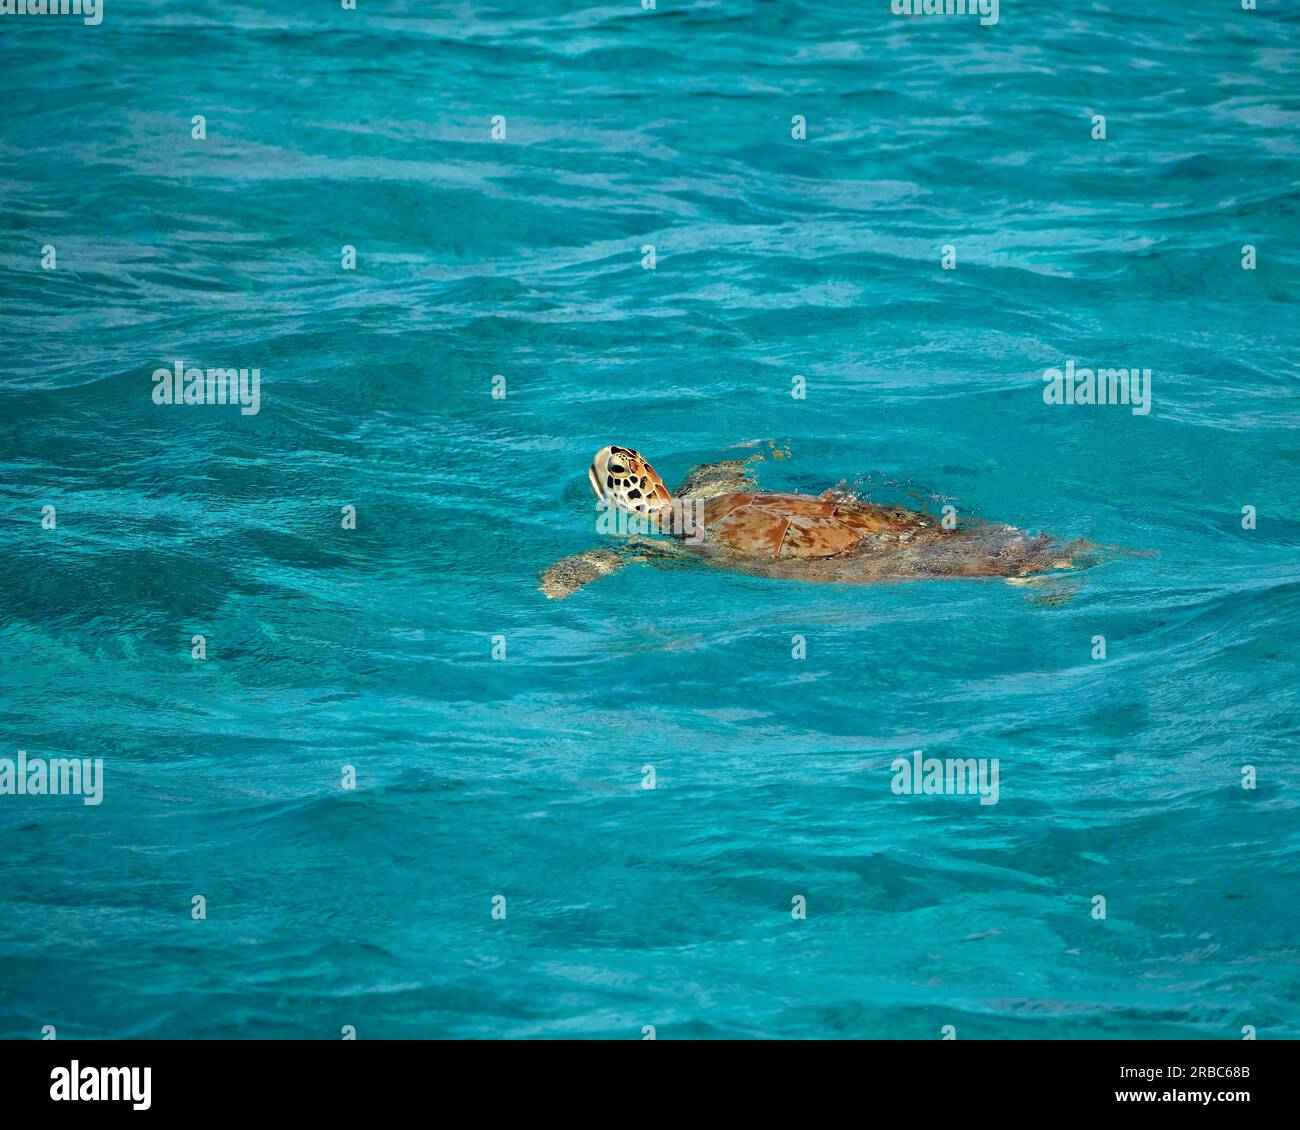 Une tortue verte nage à la surface de l'eau turquoise de la mer des Caraïbes à Tobago Cays, St. Vincent et les Grenadines Banque D'Images